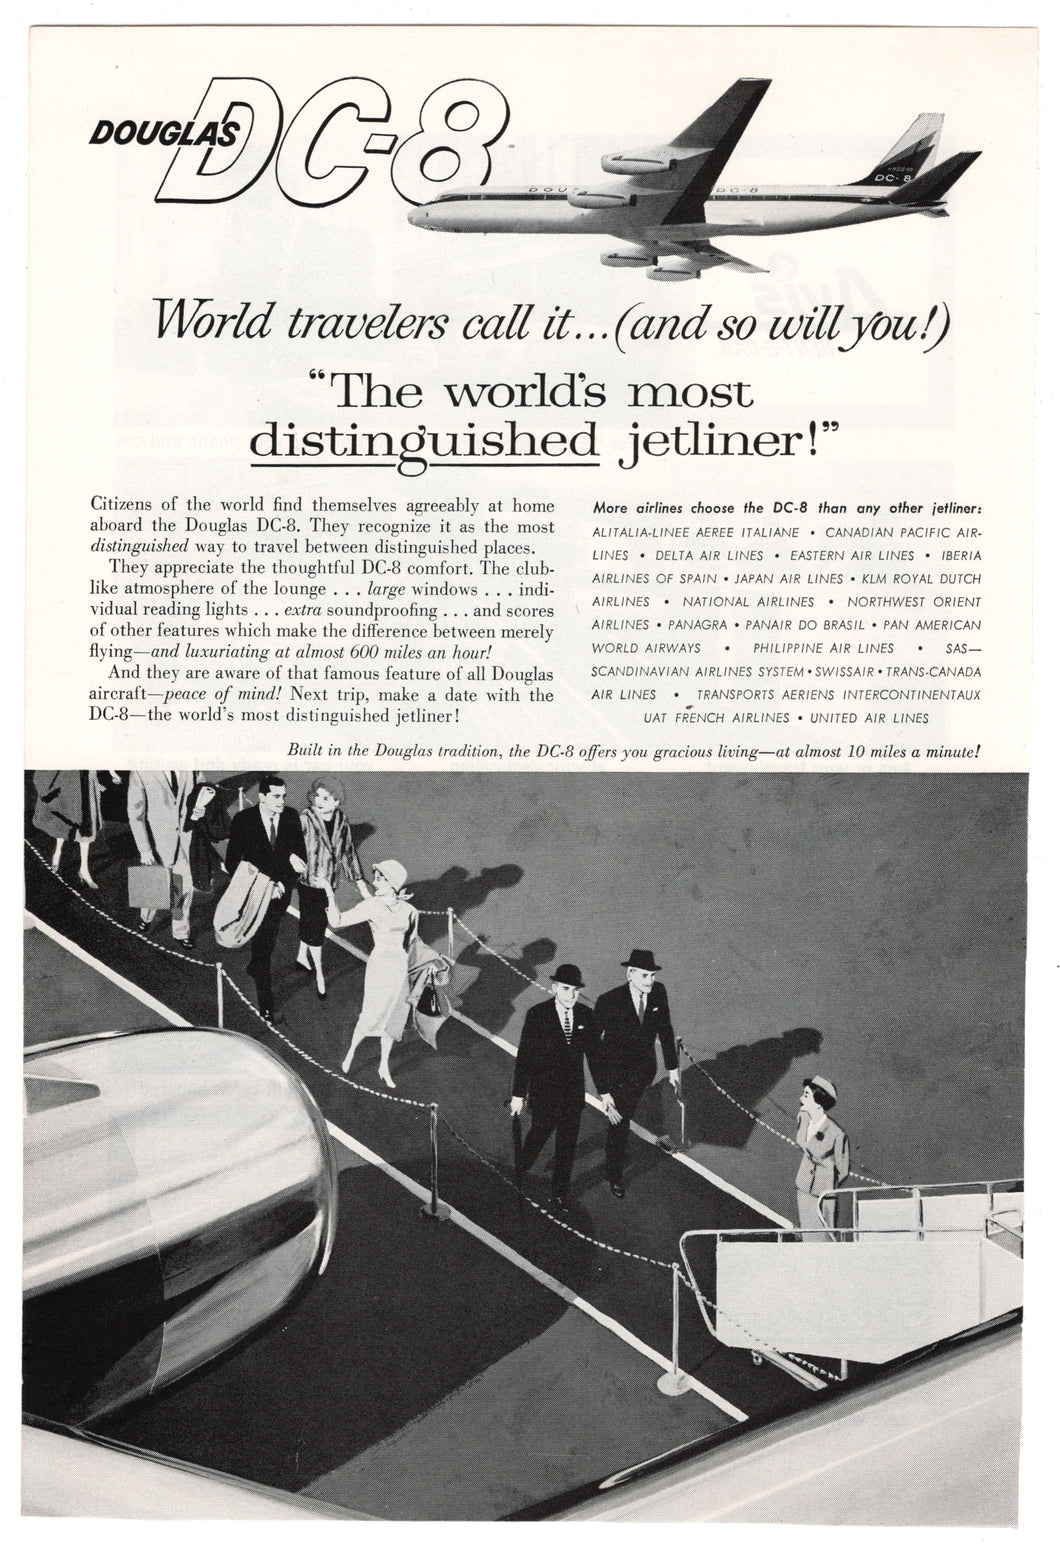 Douglas DC-8 Jet Vintage Ad - (The World's Most Distinguished Jetliner!) # 168 - 1960's